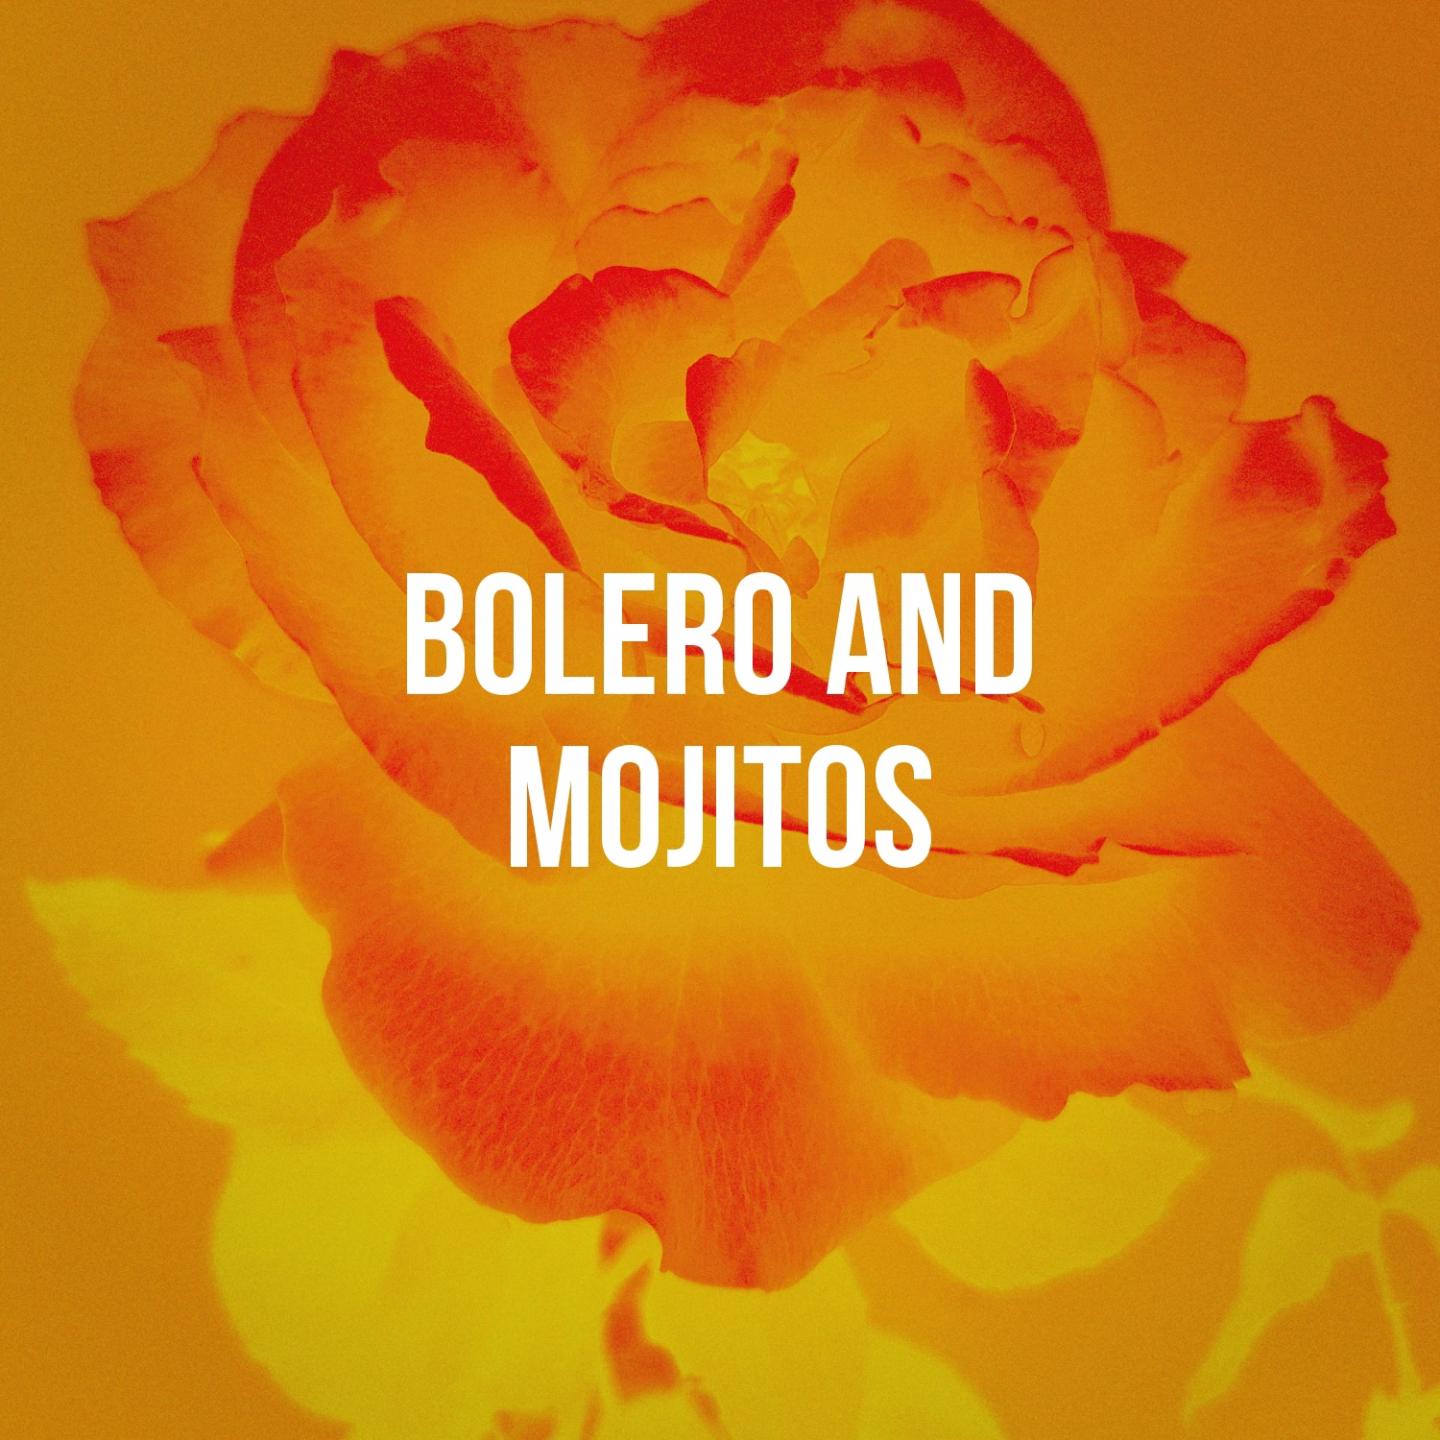 Bolero And Mojitos